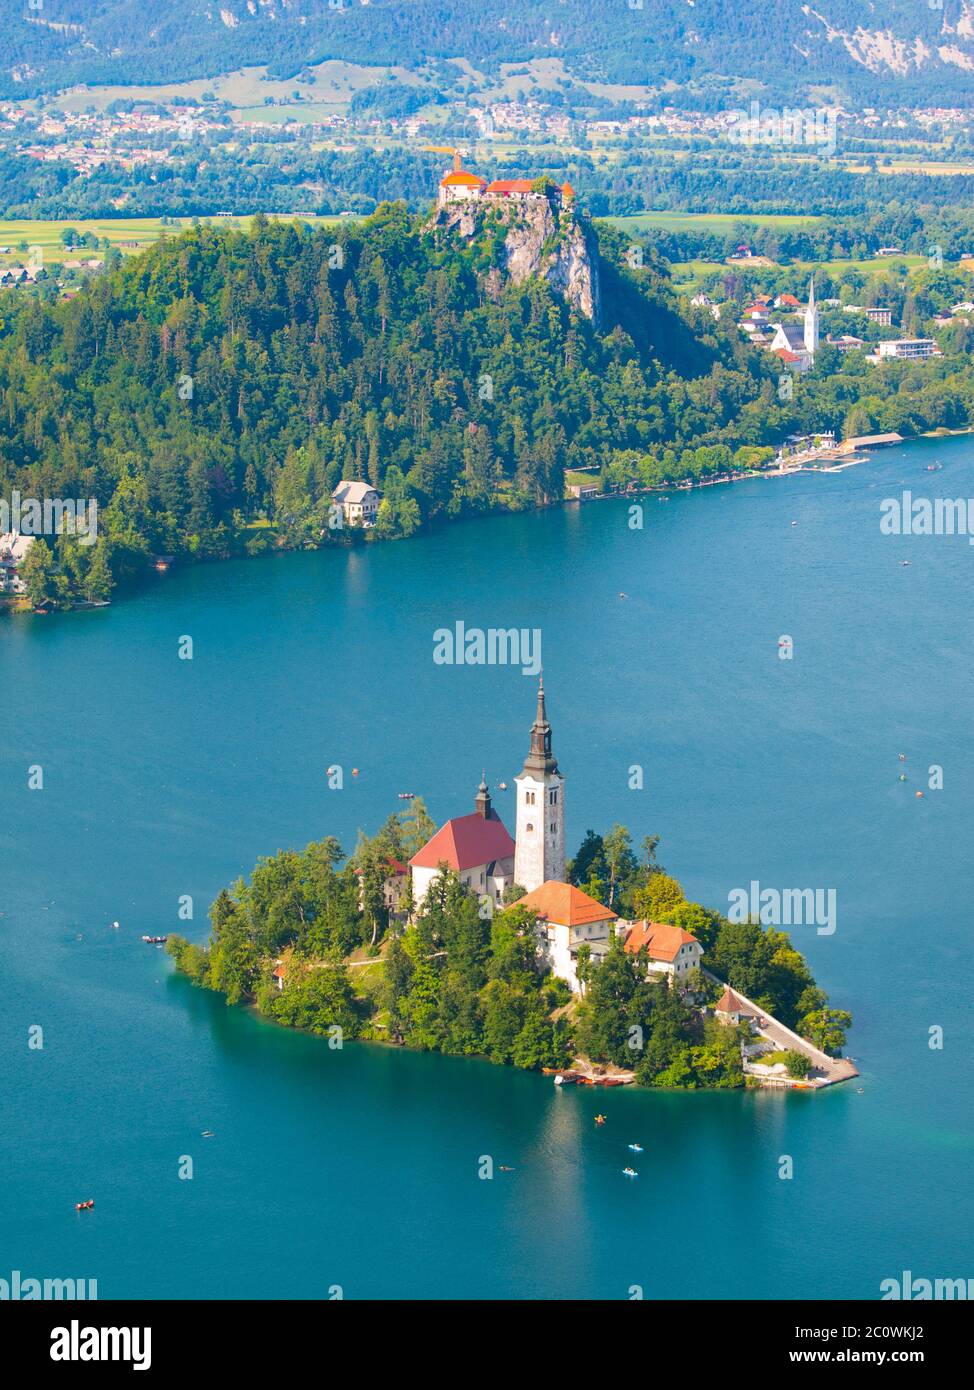 Lac de Bled avec église de l'île et château de Bled, Slovénie Banque D'Images